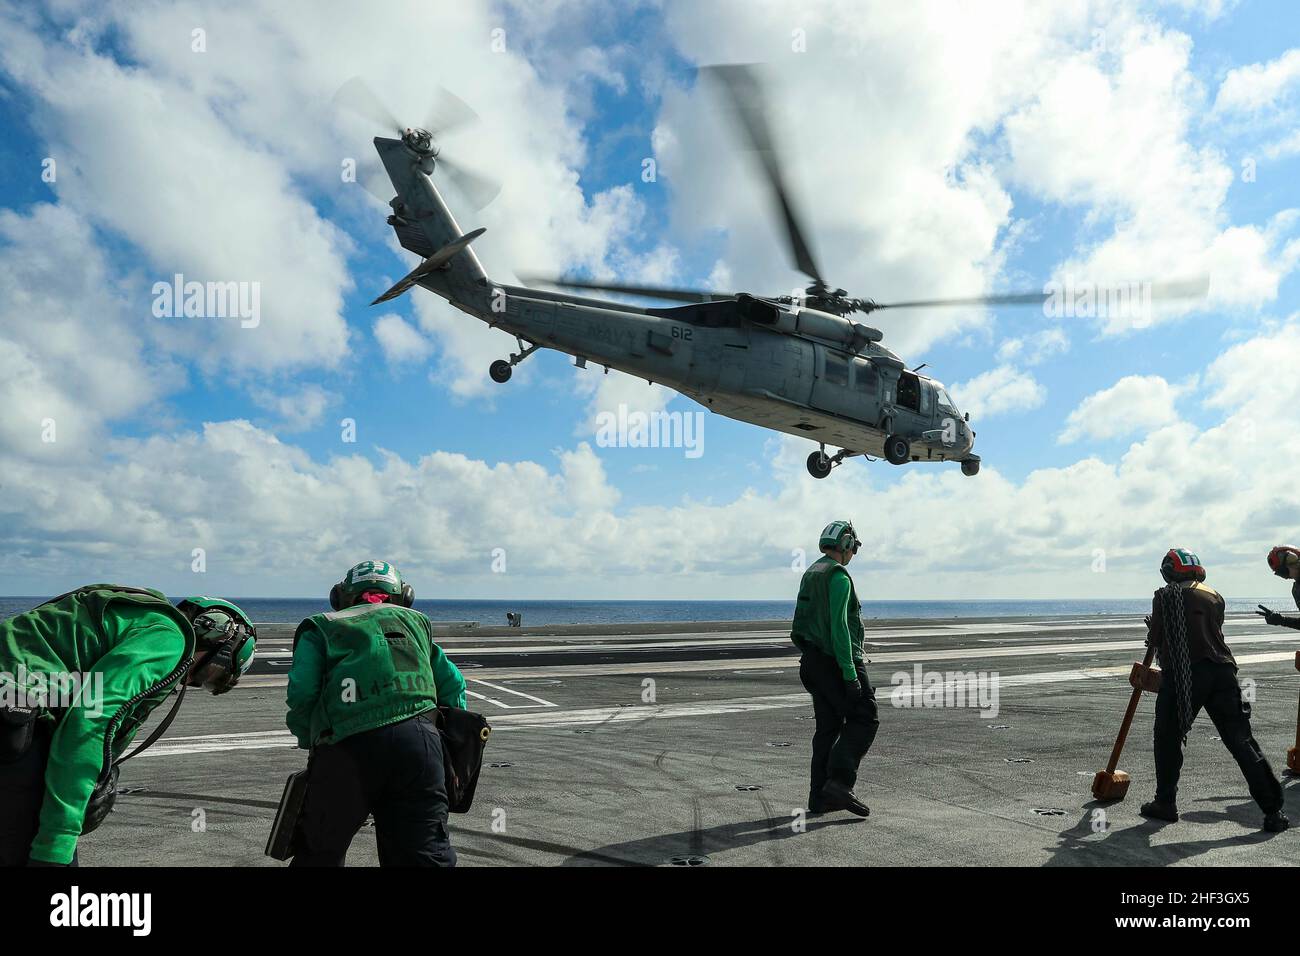 OCEANO PACIFICO (Gen. 11, 2022) un elicottero MH-60s Sea Hawk, assegnato ai 'Chargers' di Helicopter Sea Combat Squadron (HSC) 14, decollo dal ponte di volo di USS Abraham Lincoln (CVN 72). Il Abraham Lincoln Carrier Strike Group, guidato dal Carrier Strike Group 3, è stato dispiegato da San Diego, gennaio 3, a sostegno delle operazioni di sicurezza marittima globale. Parte integrante della U.S. Pacific Fleet, la U.S. 3rd Fleet opera forze navali nell'Indo-Pacific e fornisce la formazione realistica e pertinente necessaria per svolgere il ruolo della nostra Marina in tutta la gamma di operazioni militari, da com Foto Stock